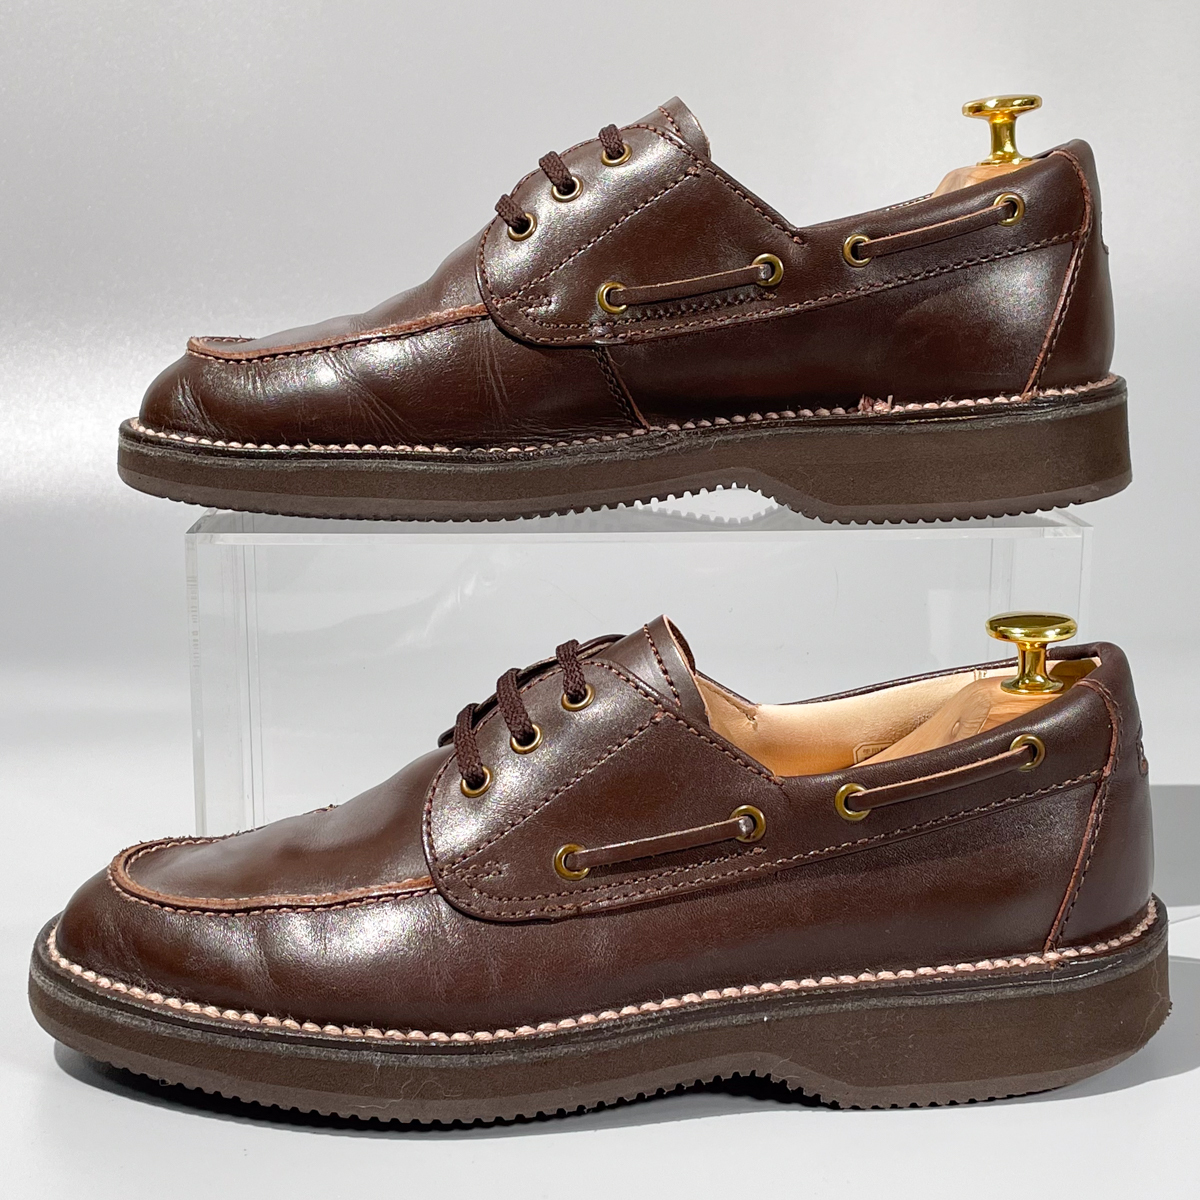 即決 REGAL リーガル ウォーカー Uチップ ウォーキングシューズ ブラウン 茶色 メンズ 本革 レザー 革靴 25.5cm ビジネスシューズ A1911_画像6